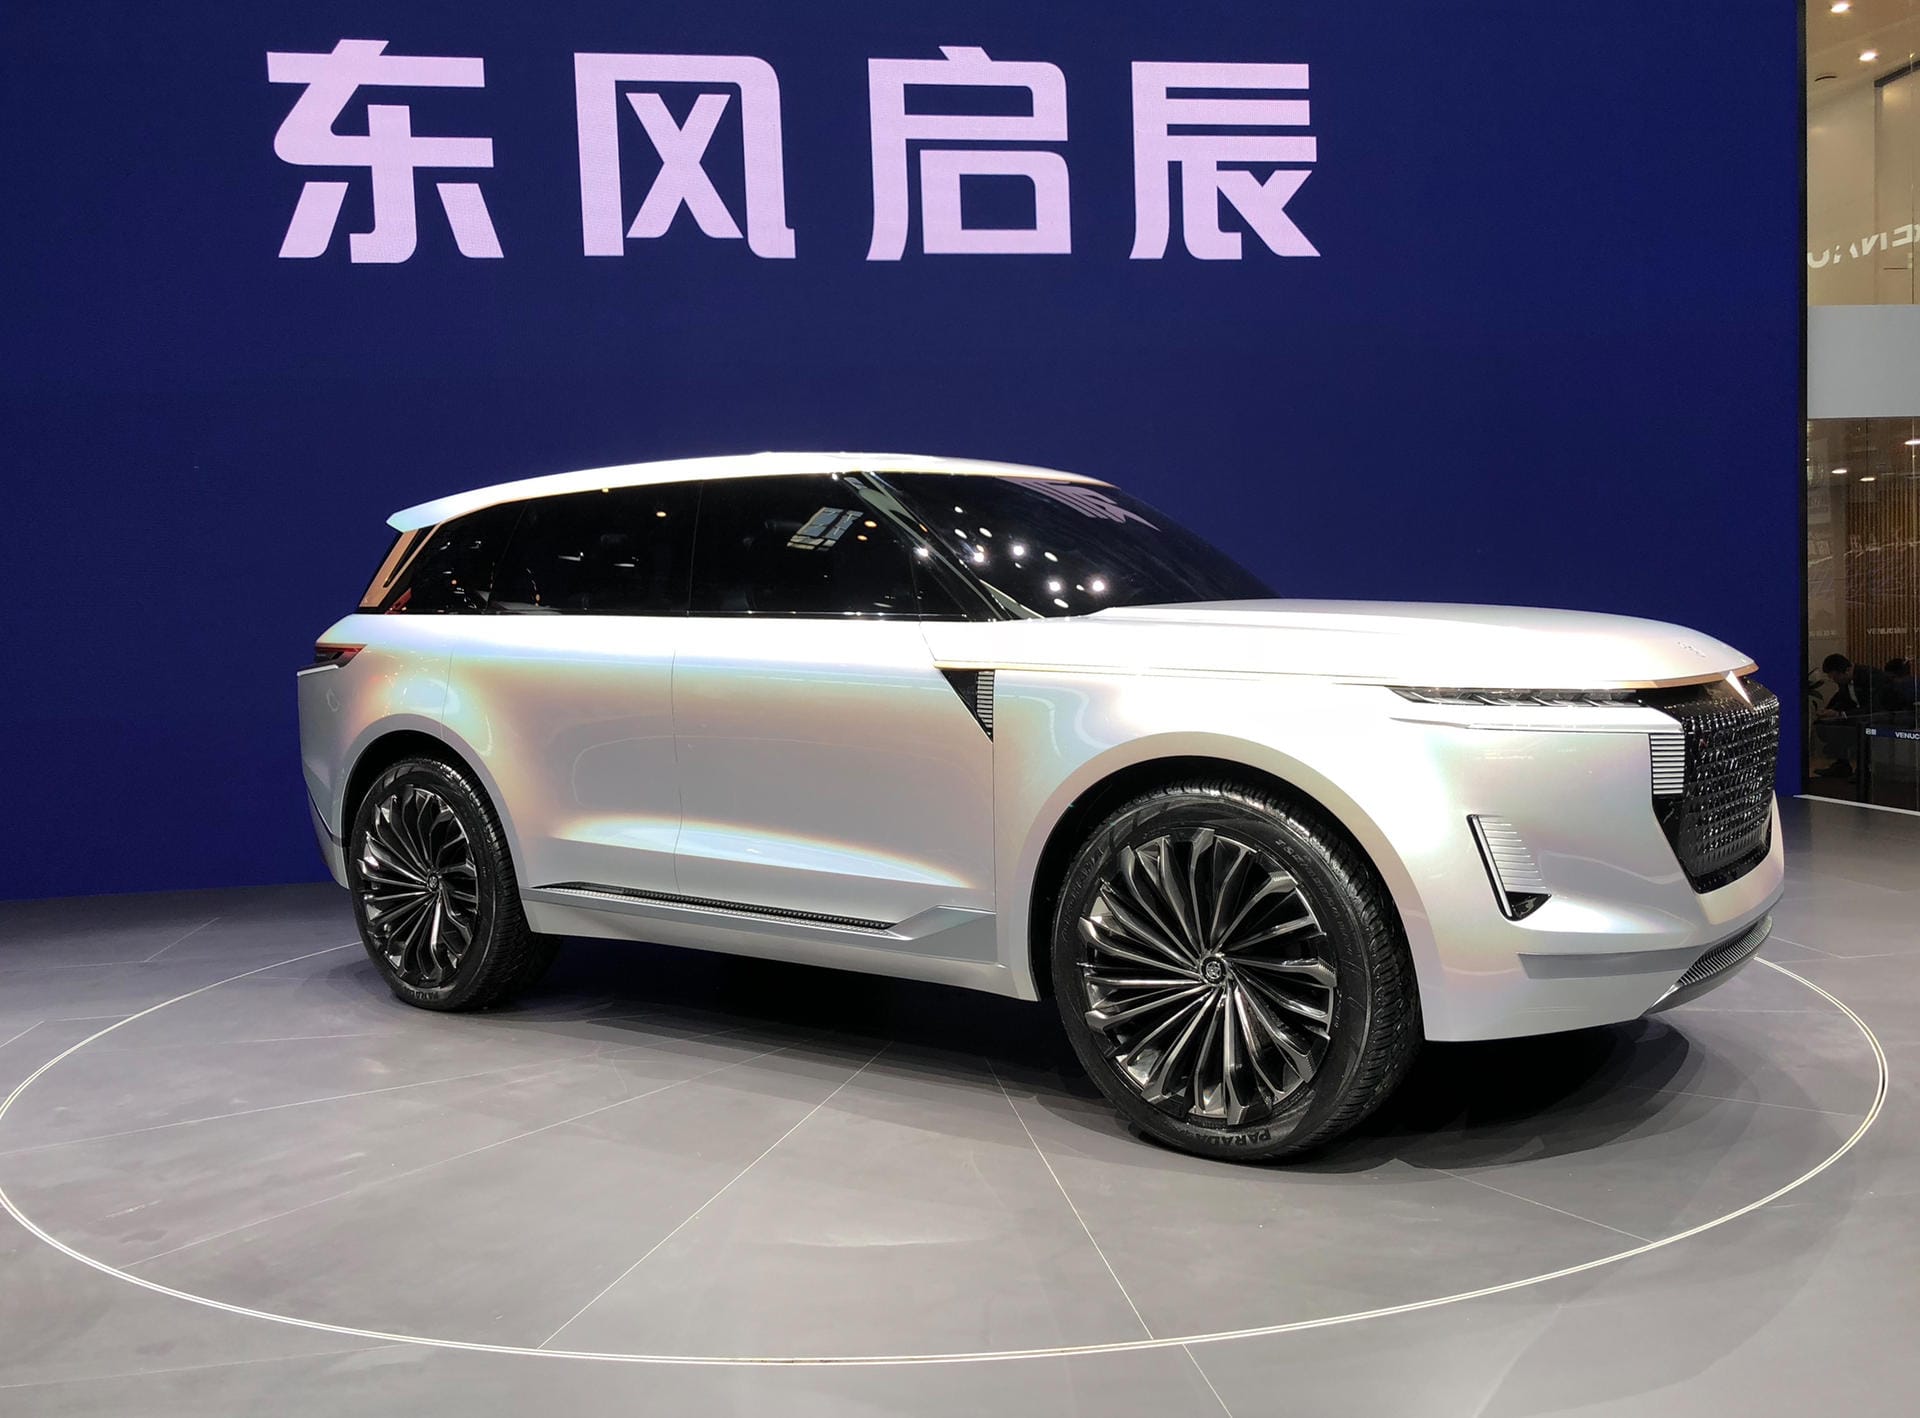 Hat man schon irgendwo gesehen: Chinesische Marken kopieren Designs nicht mehr wie früher. Manches kommt einem dennoch bekannt vor. Die Linien des Venucia-SUV etwa erinnern stark an Land Rover.